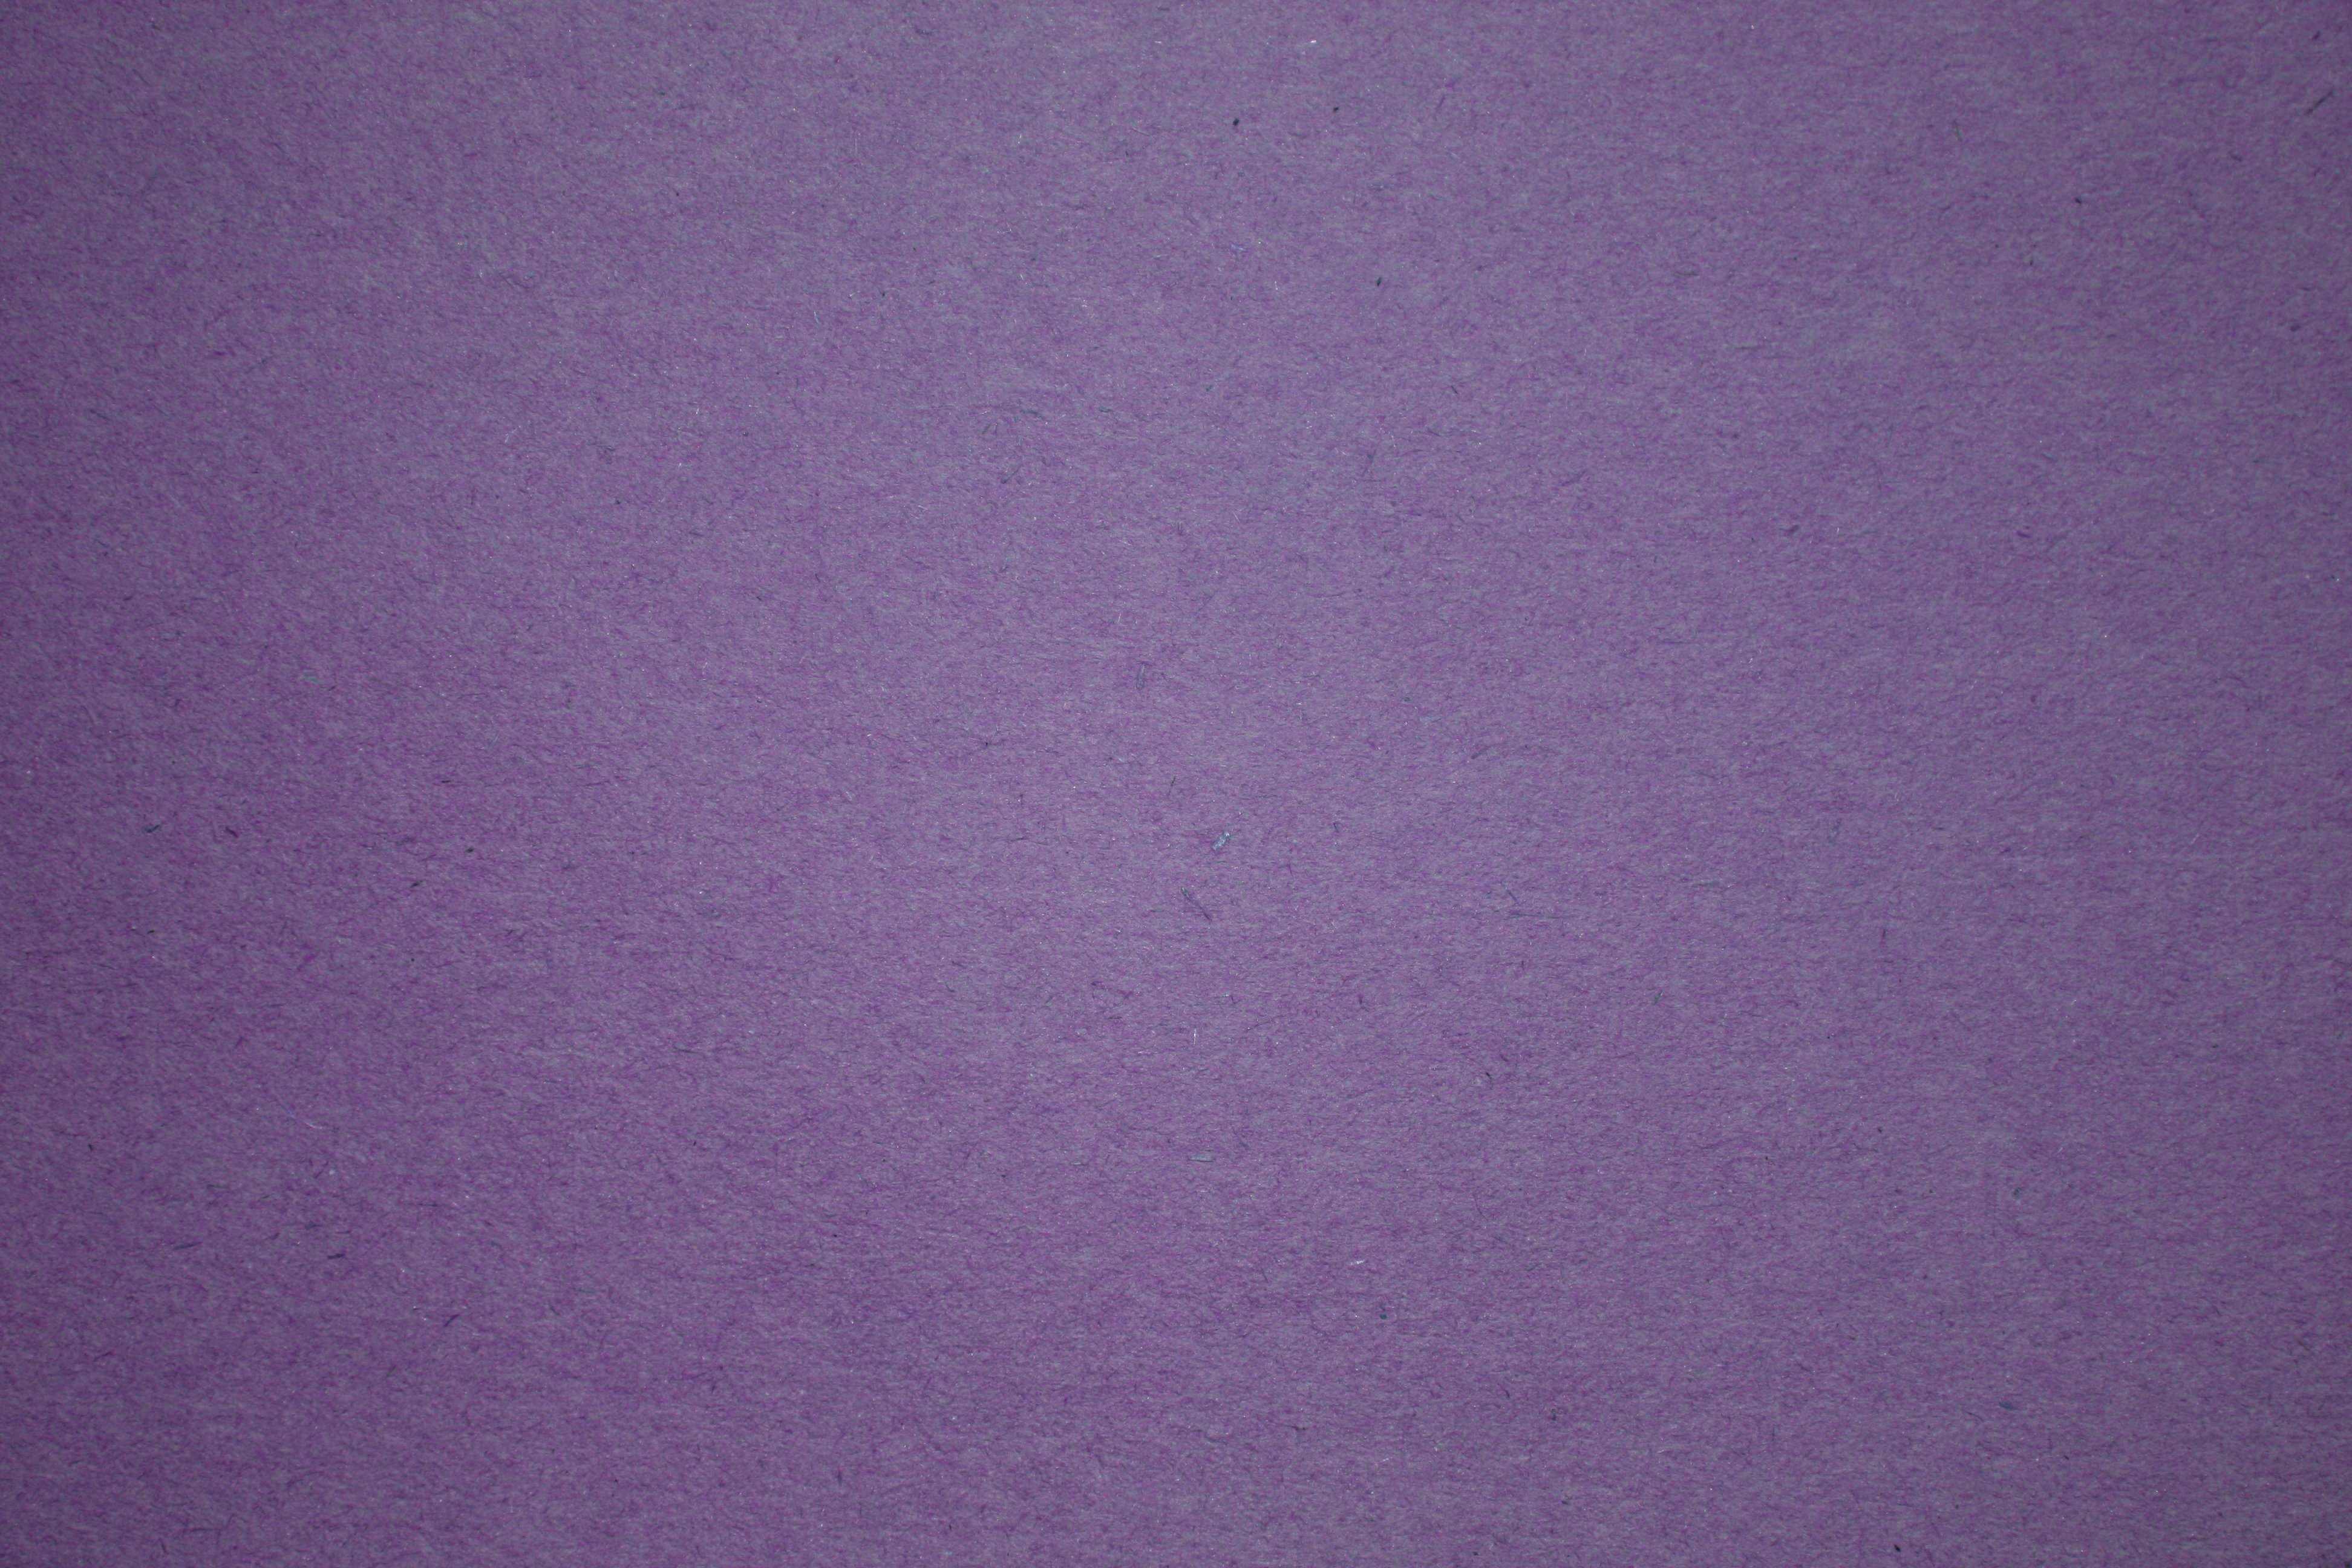 5,087 Purple Construction Paper Texture Images, Stock Photos, 3D objects, &  Vectors